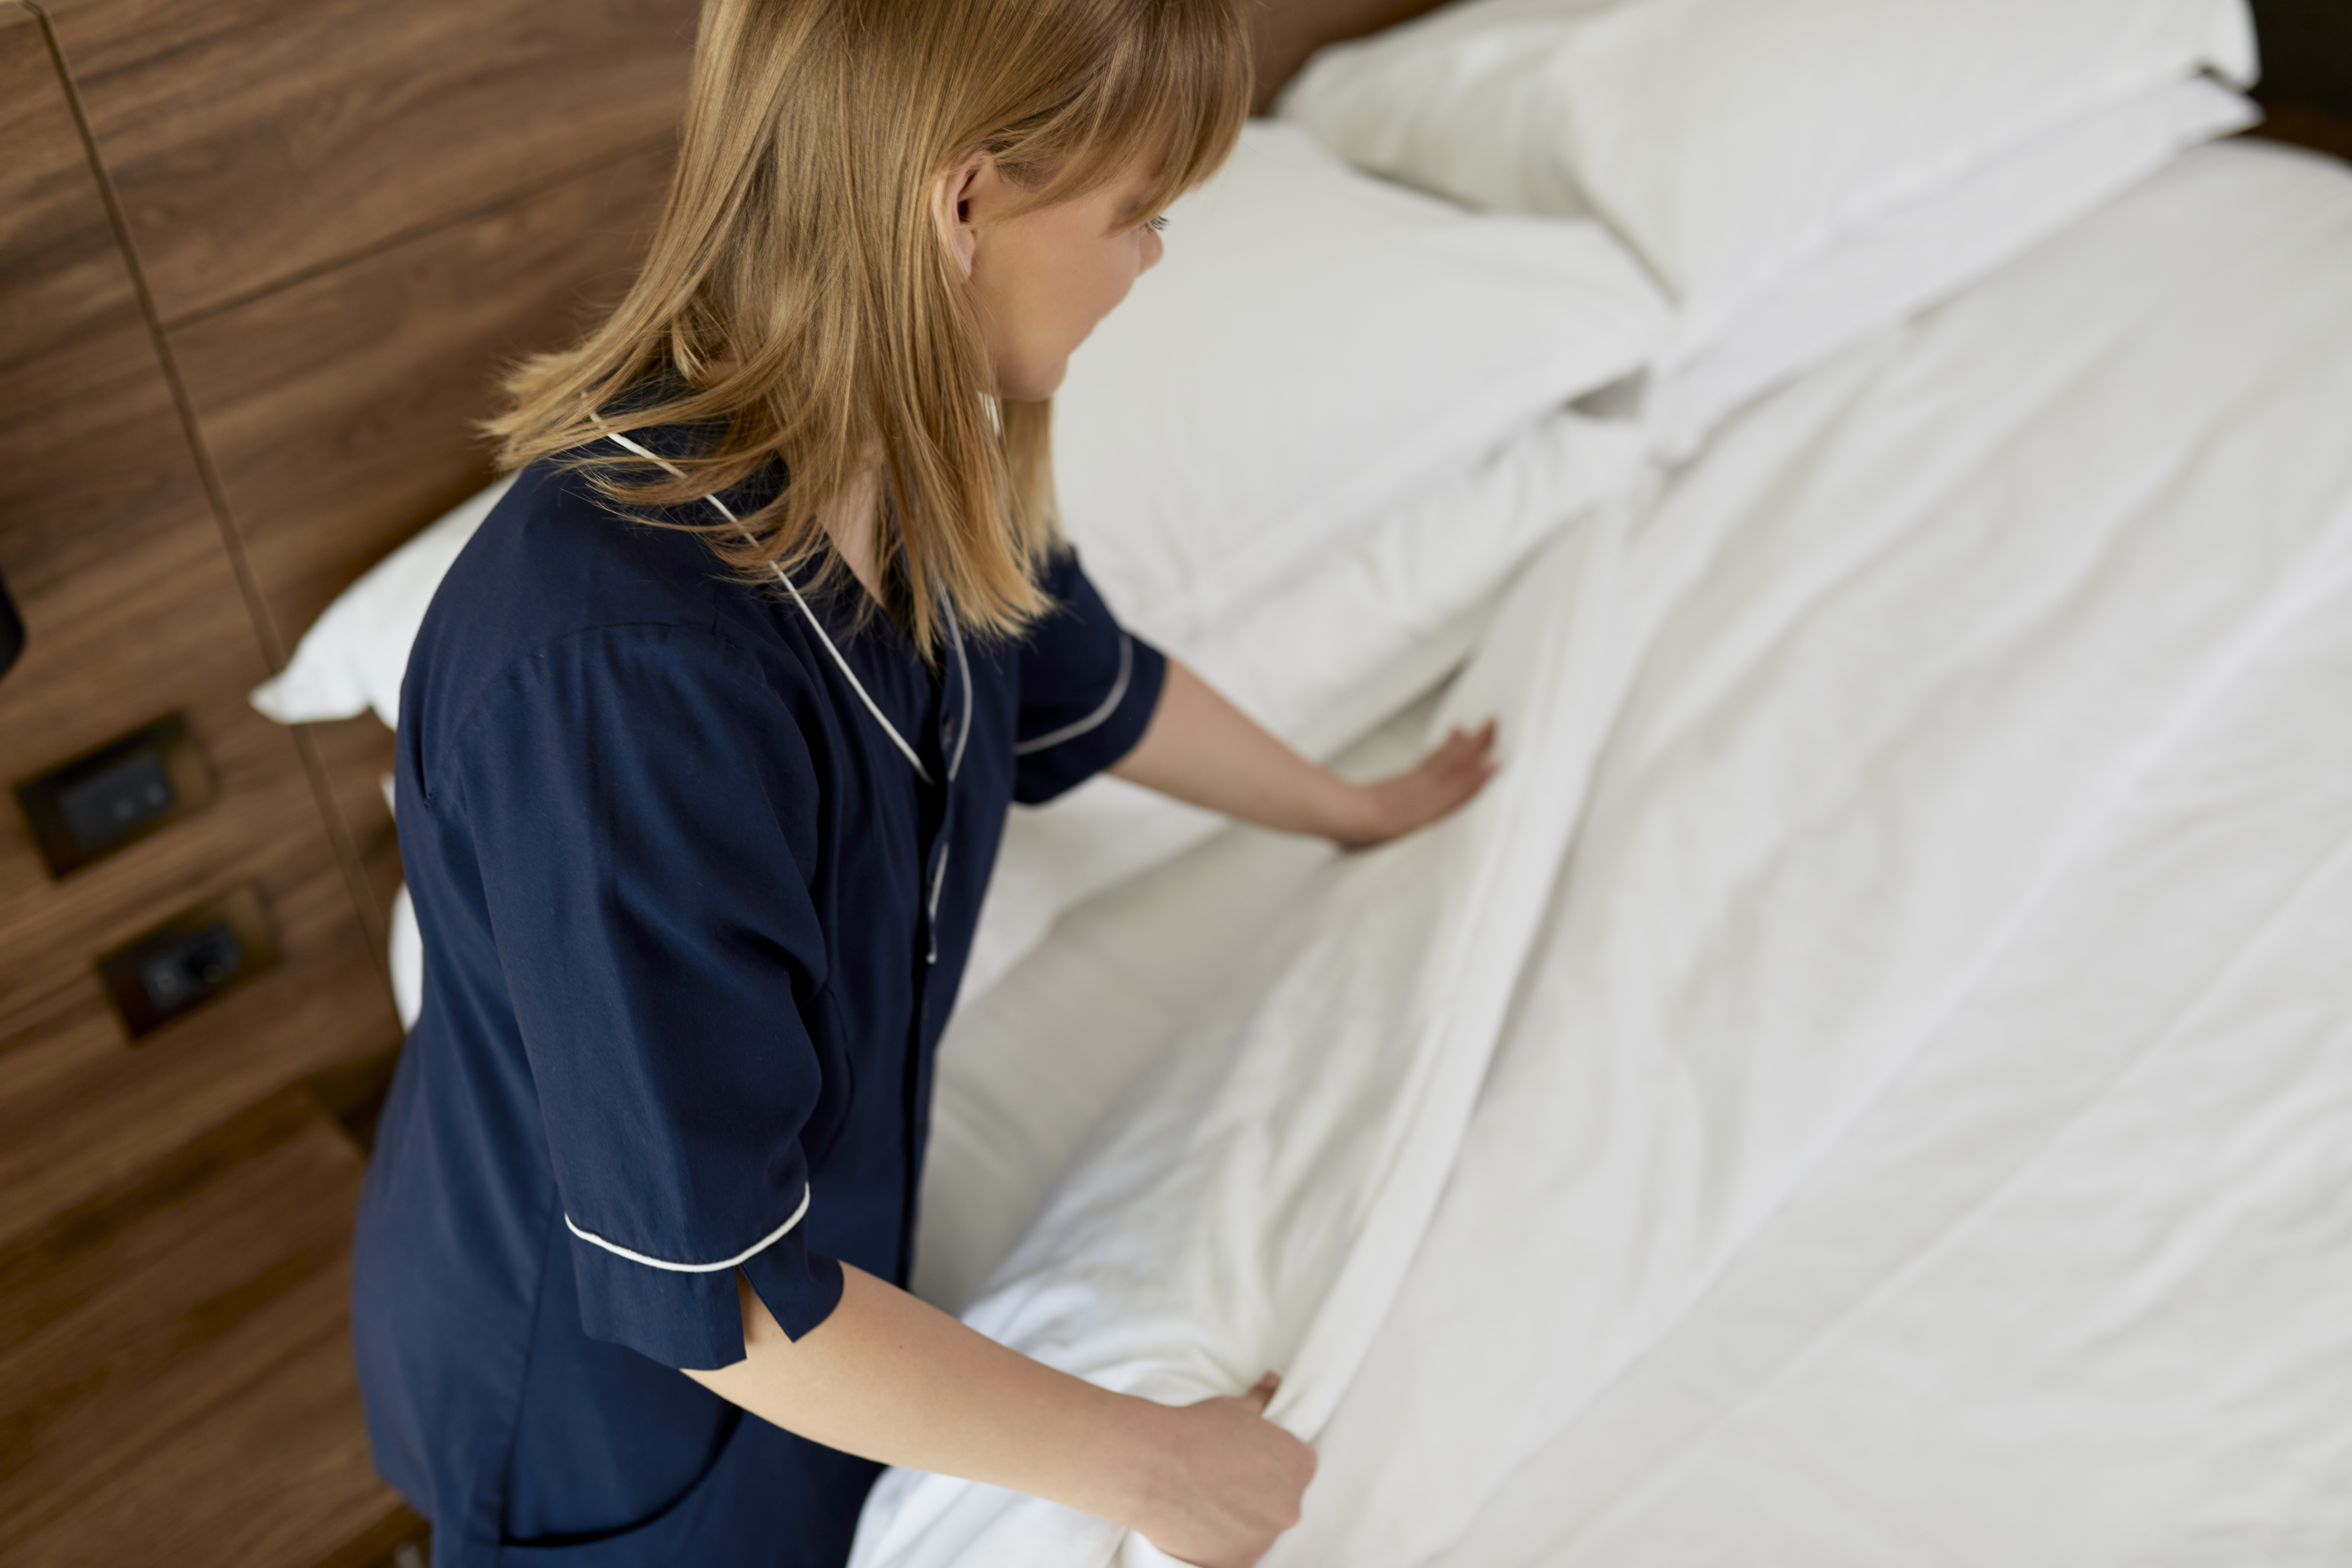 Camareira do hotel arruma a cama | Fonte: Getty Images